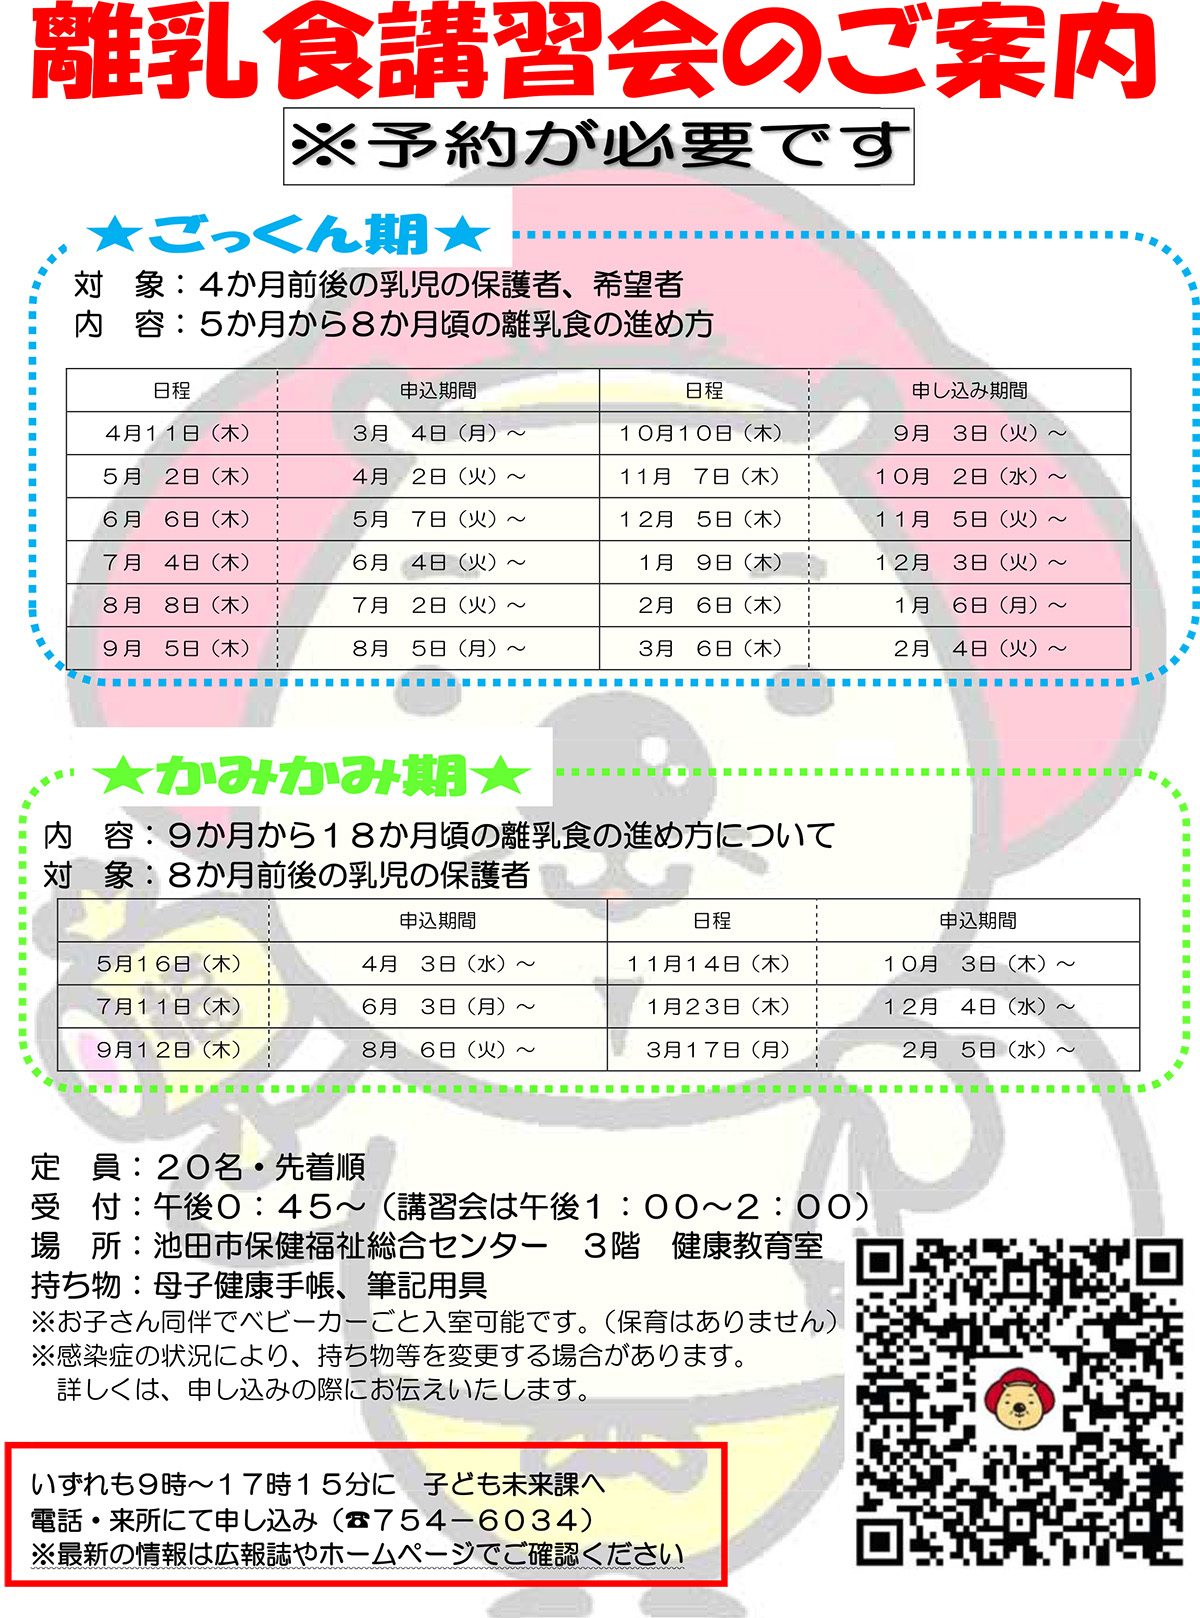 【予約制】離乳食講習会 7月4日開催ごっくん期